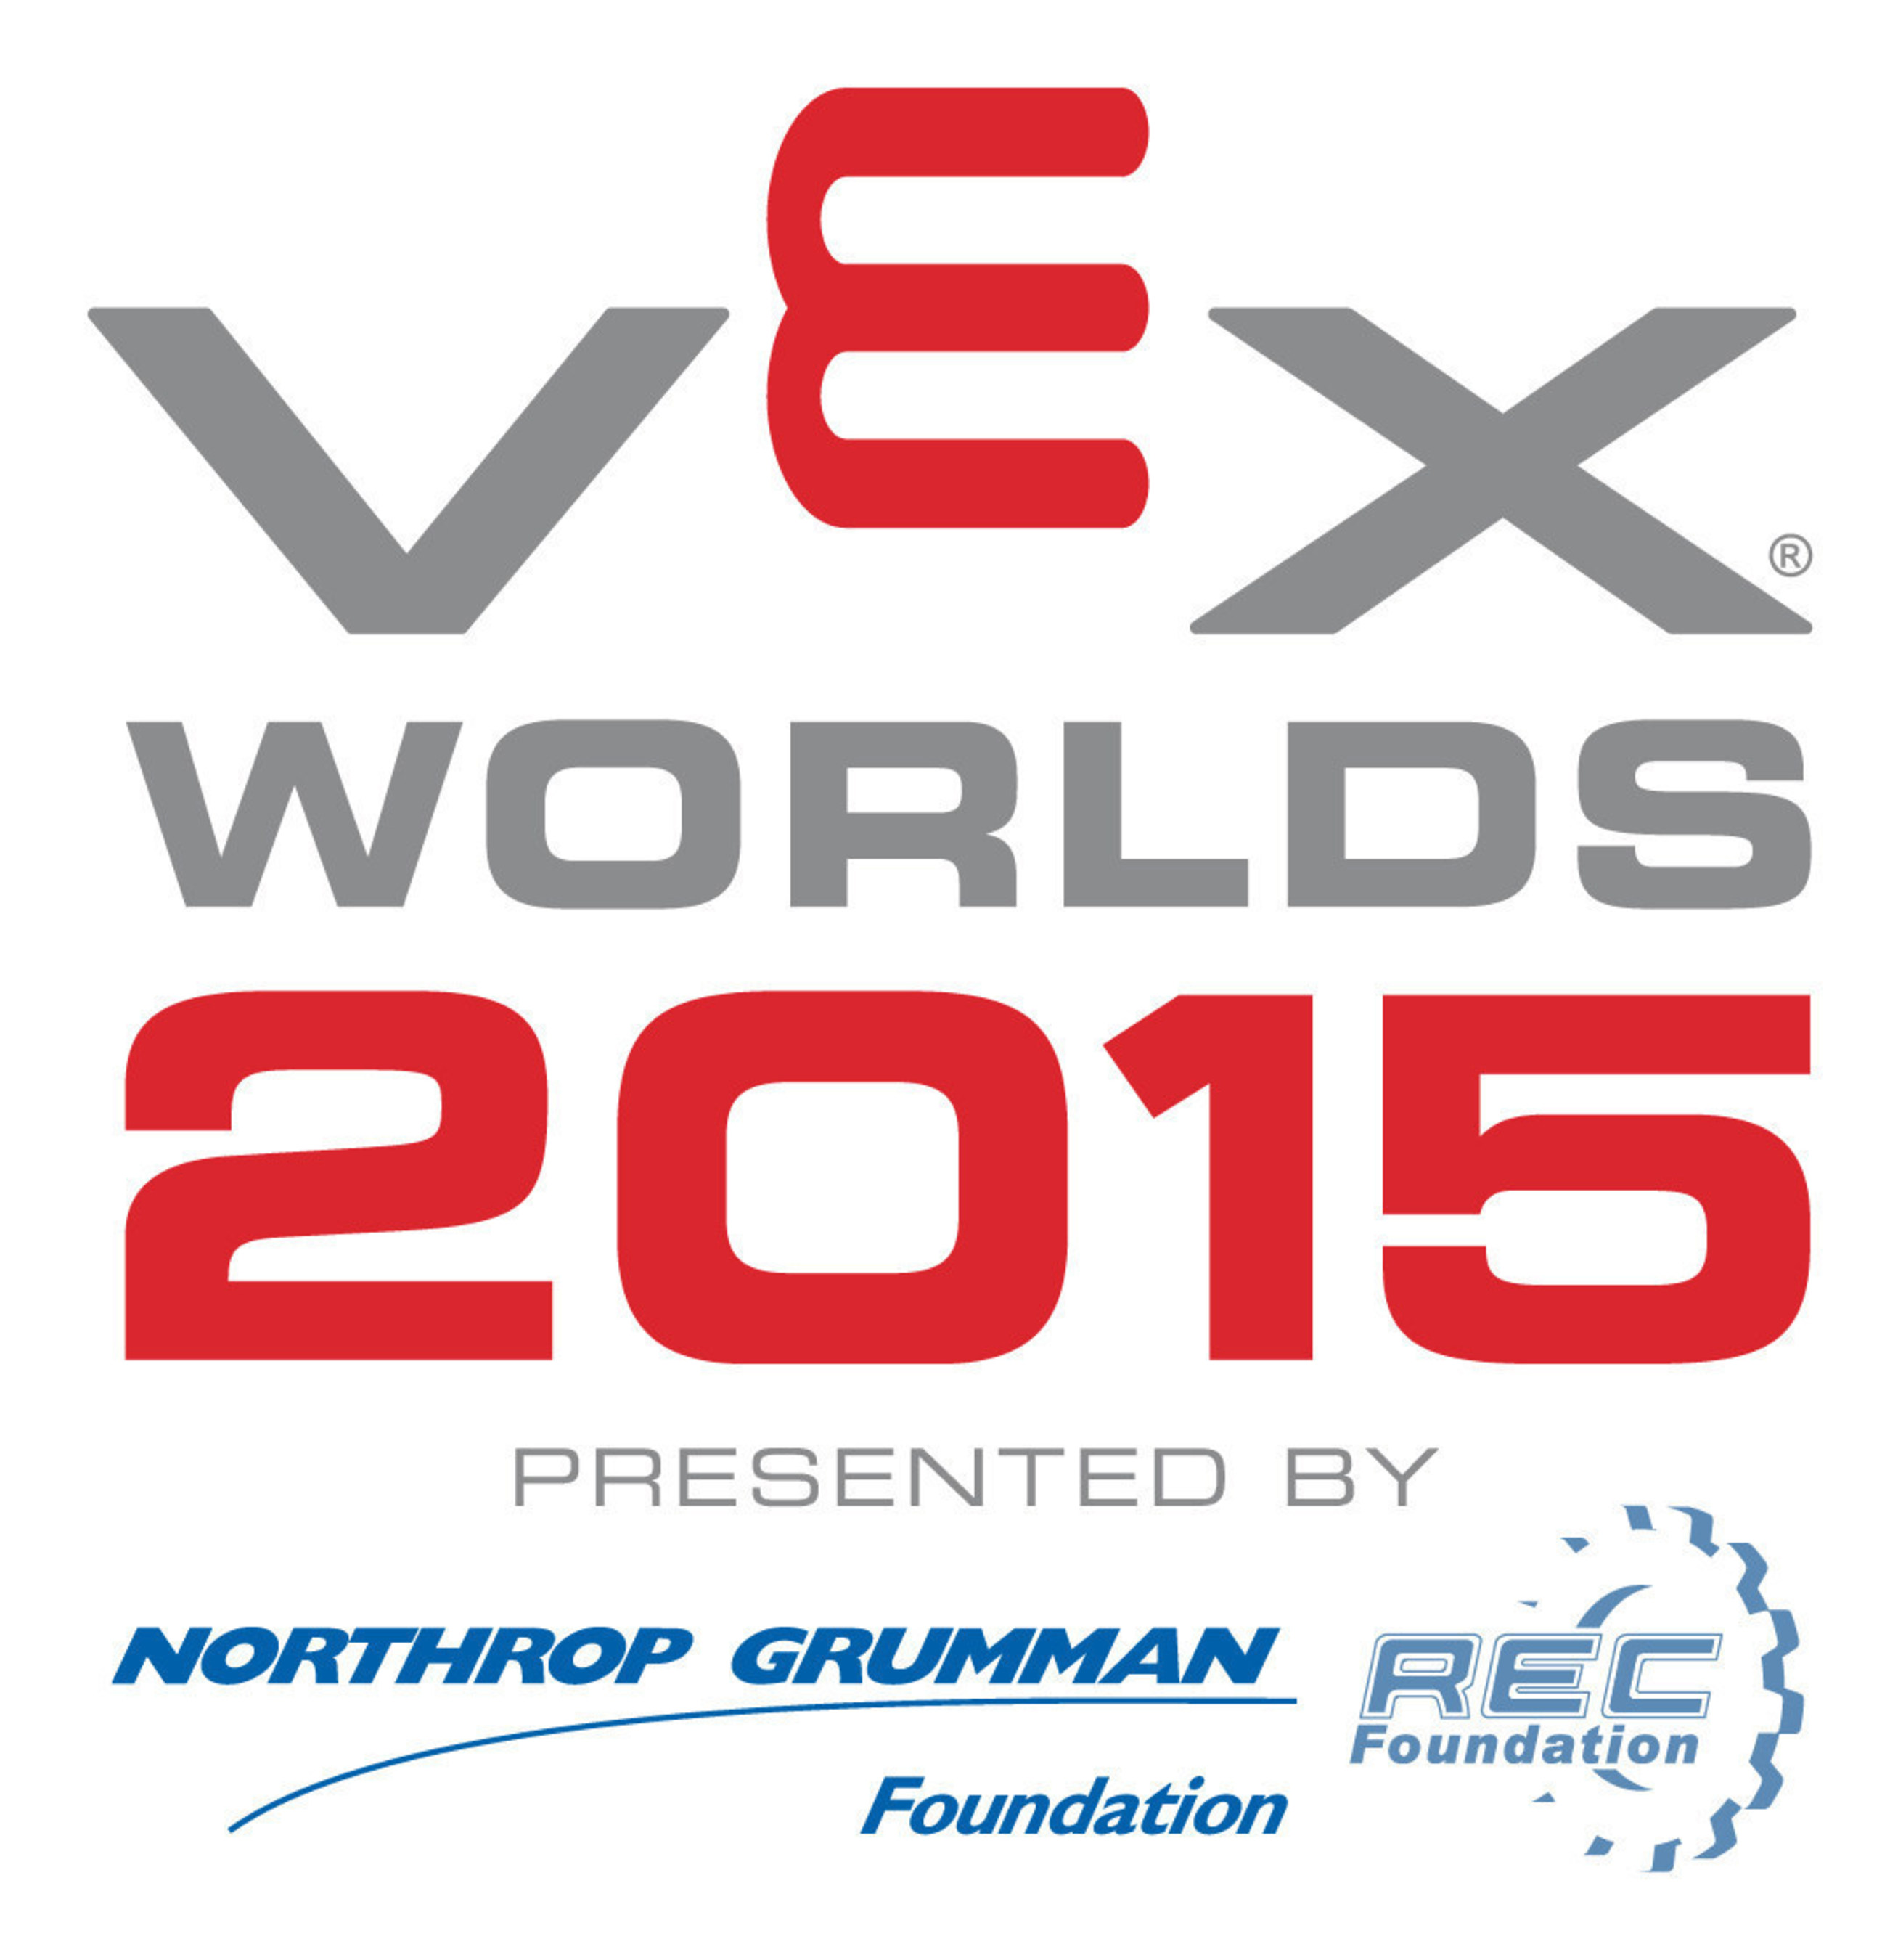 VEX Worlds 2015